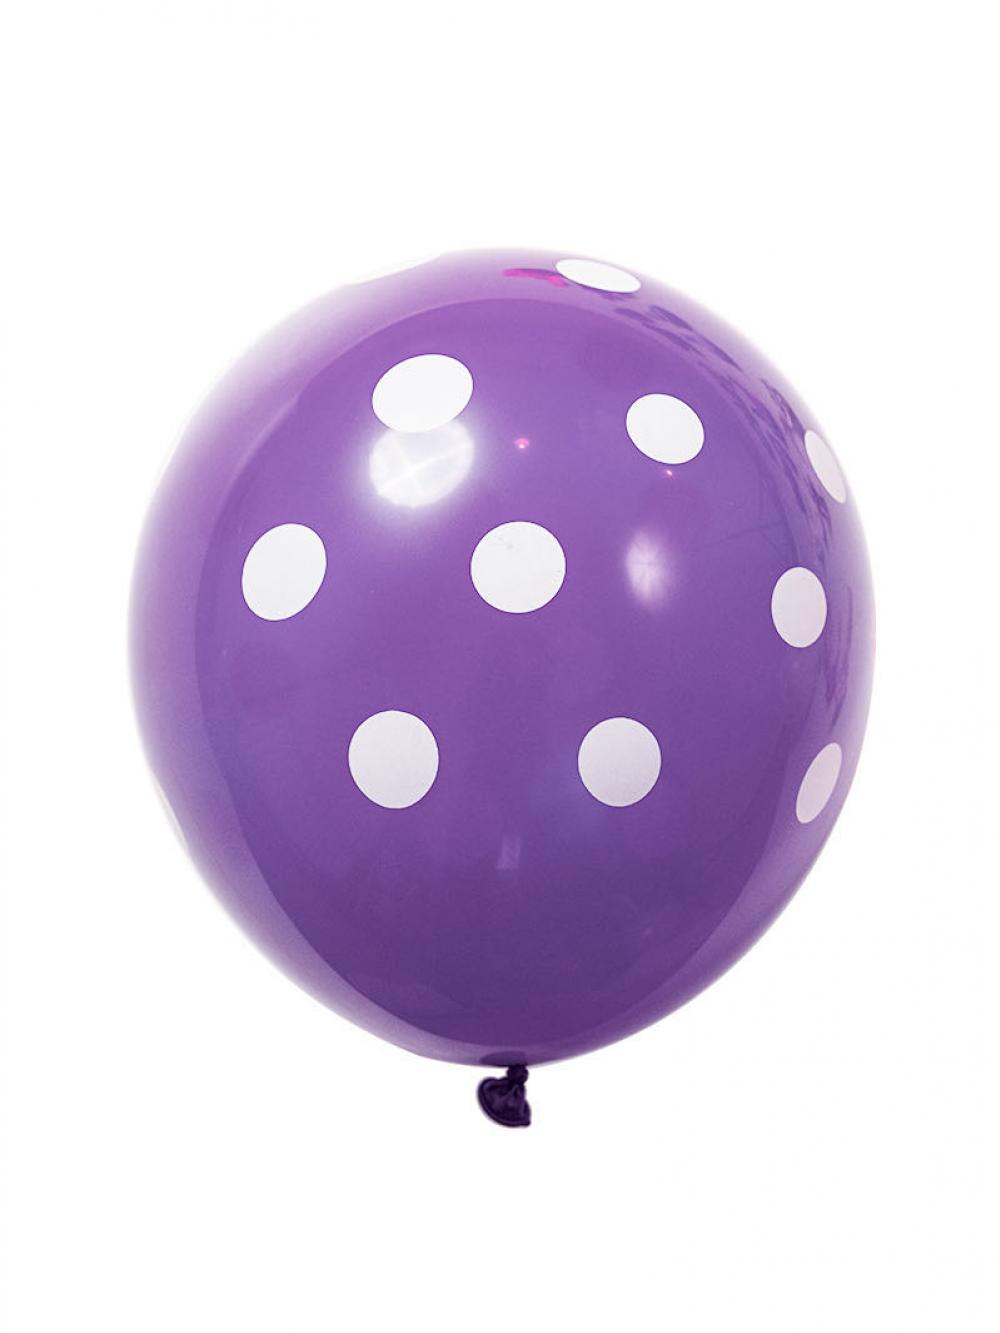 12 Inch Standard Polka Dot Balloons Purple Balloon White Dot  (100PCS)